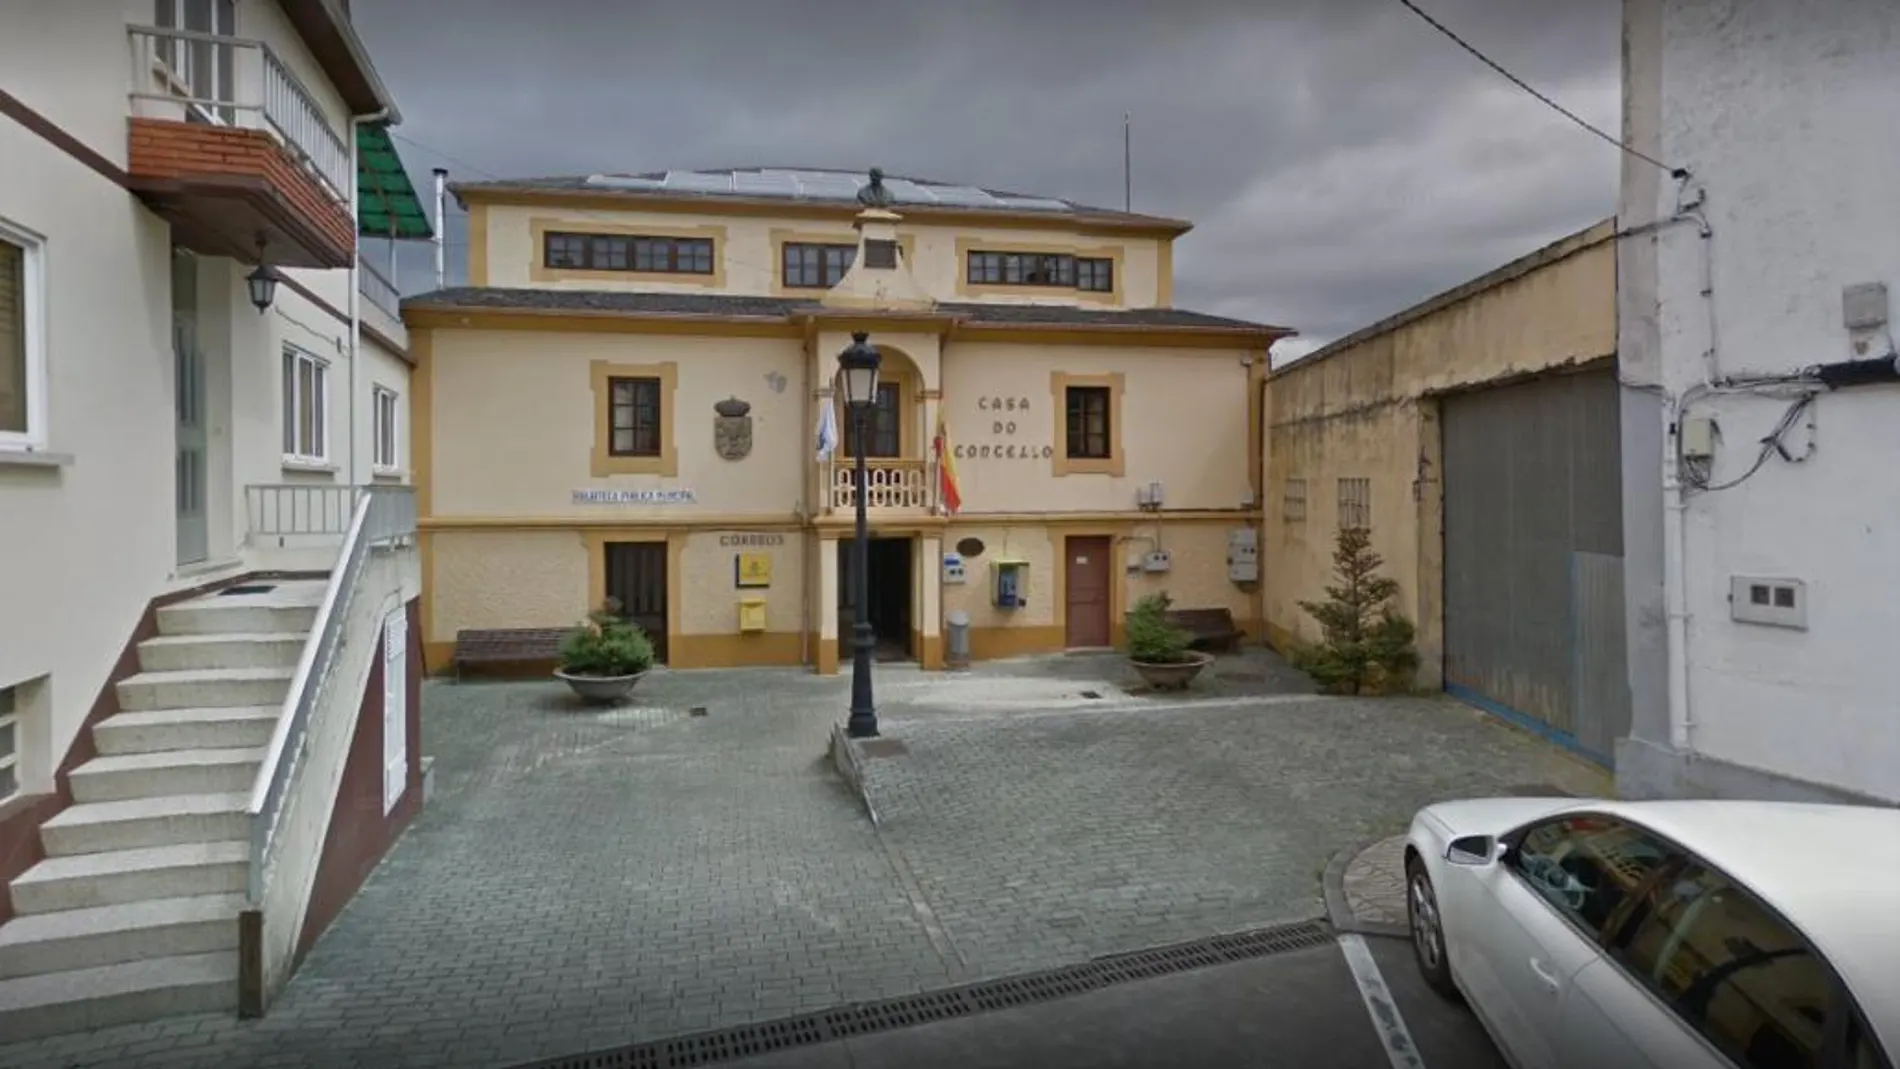 Ayuntamiento de la localidad lucense de Riotorto